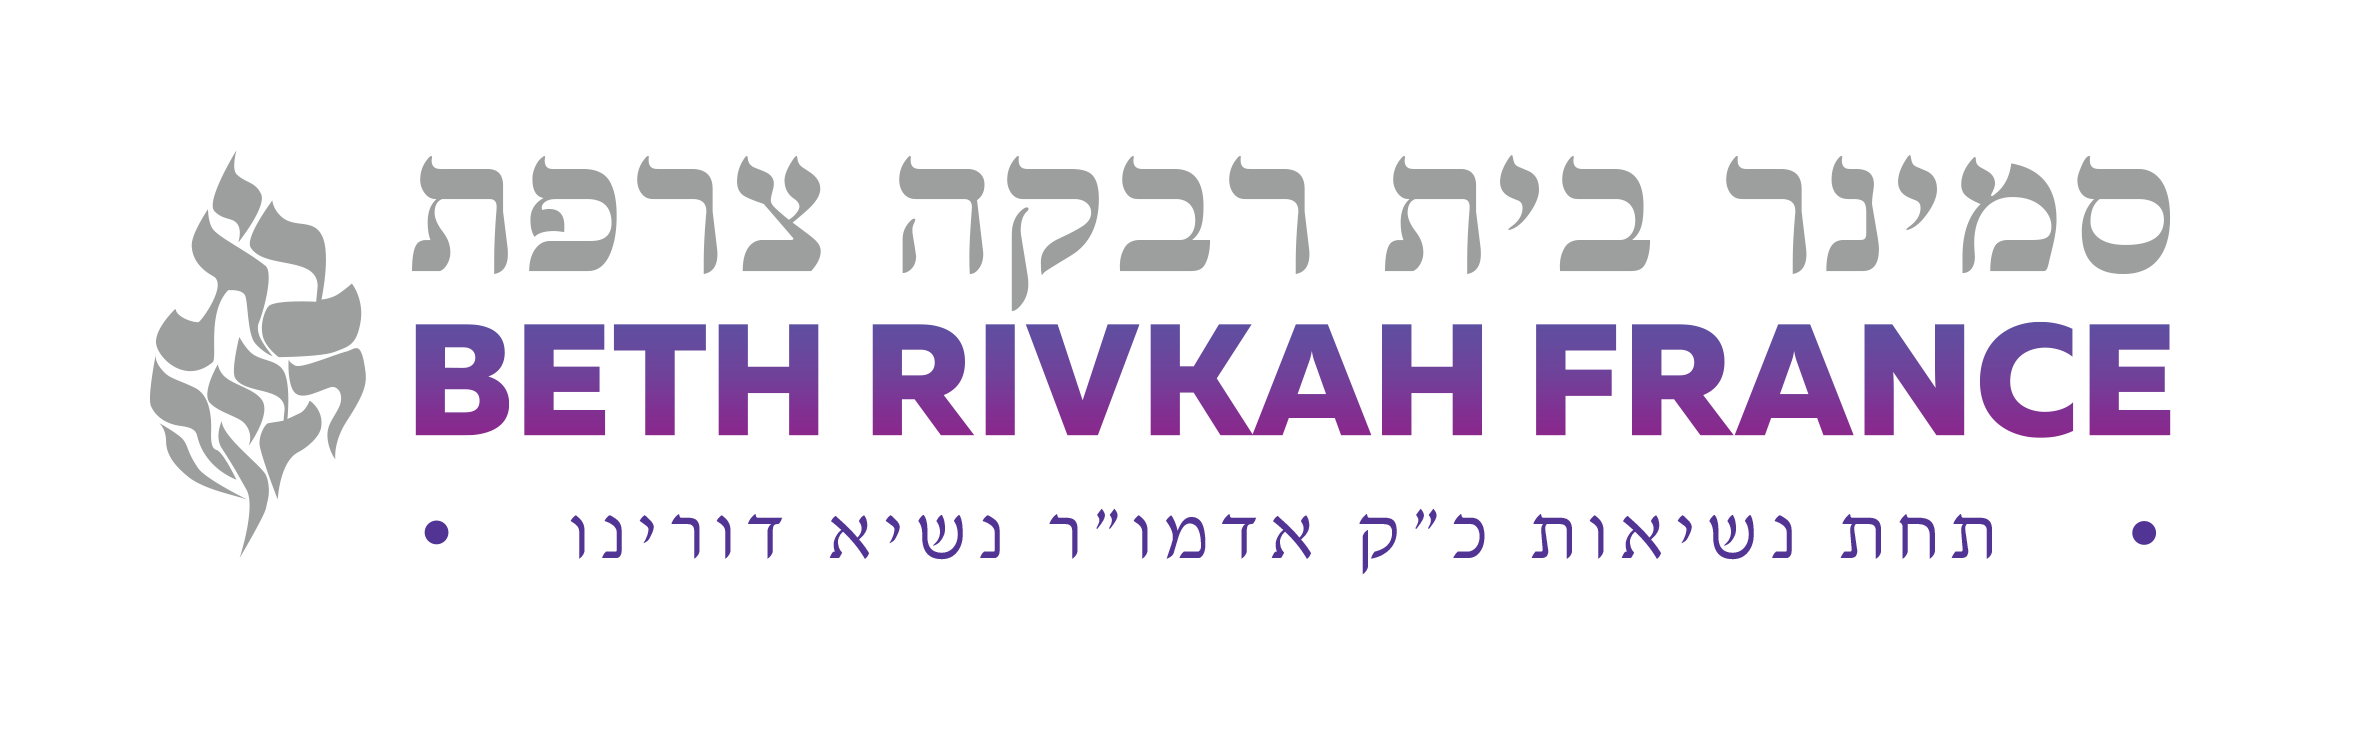 Le séminaire Beth Rivkah